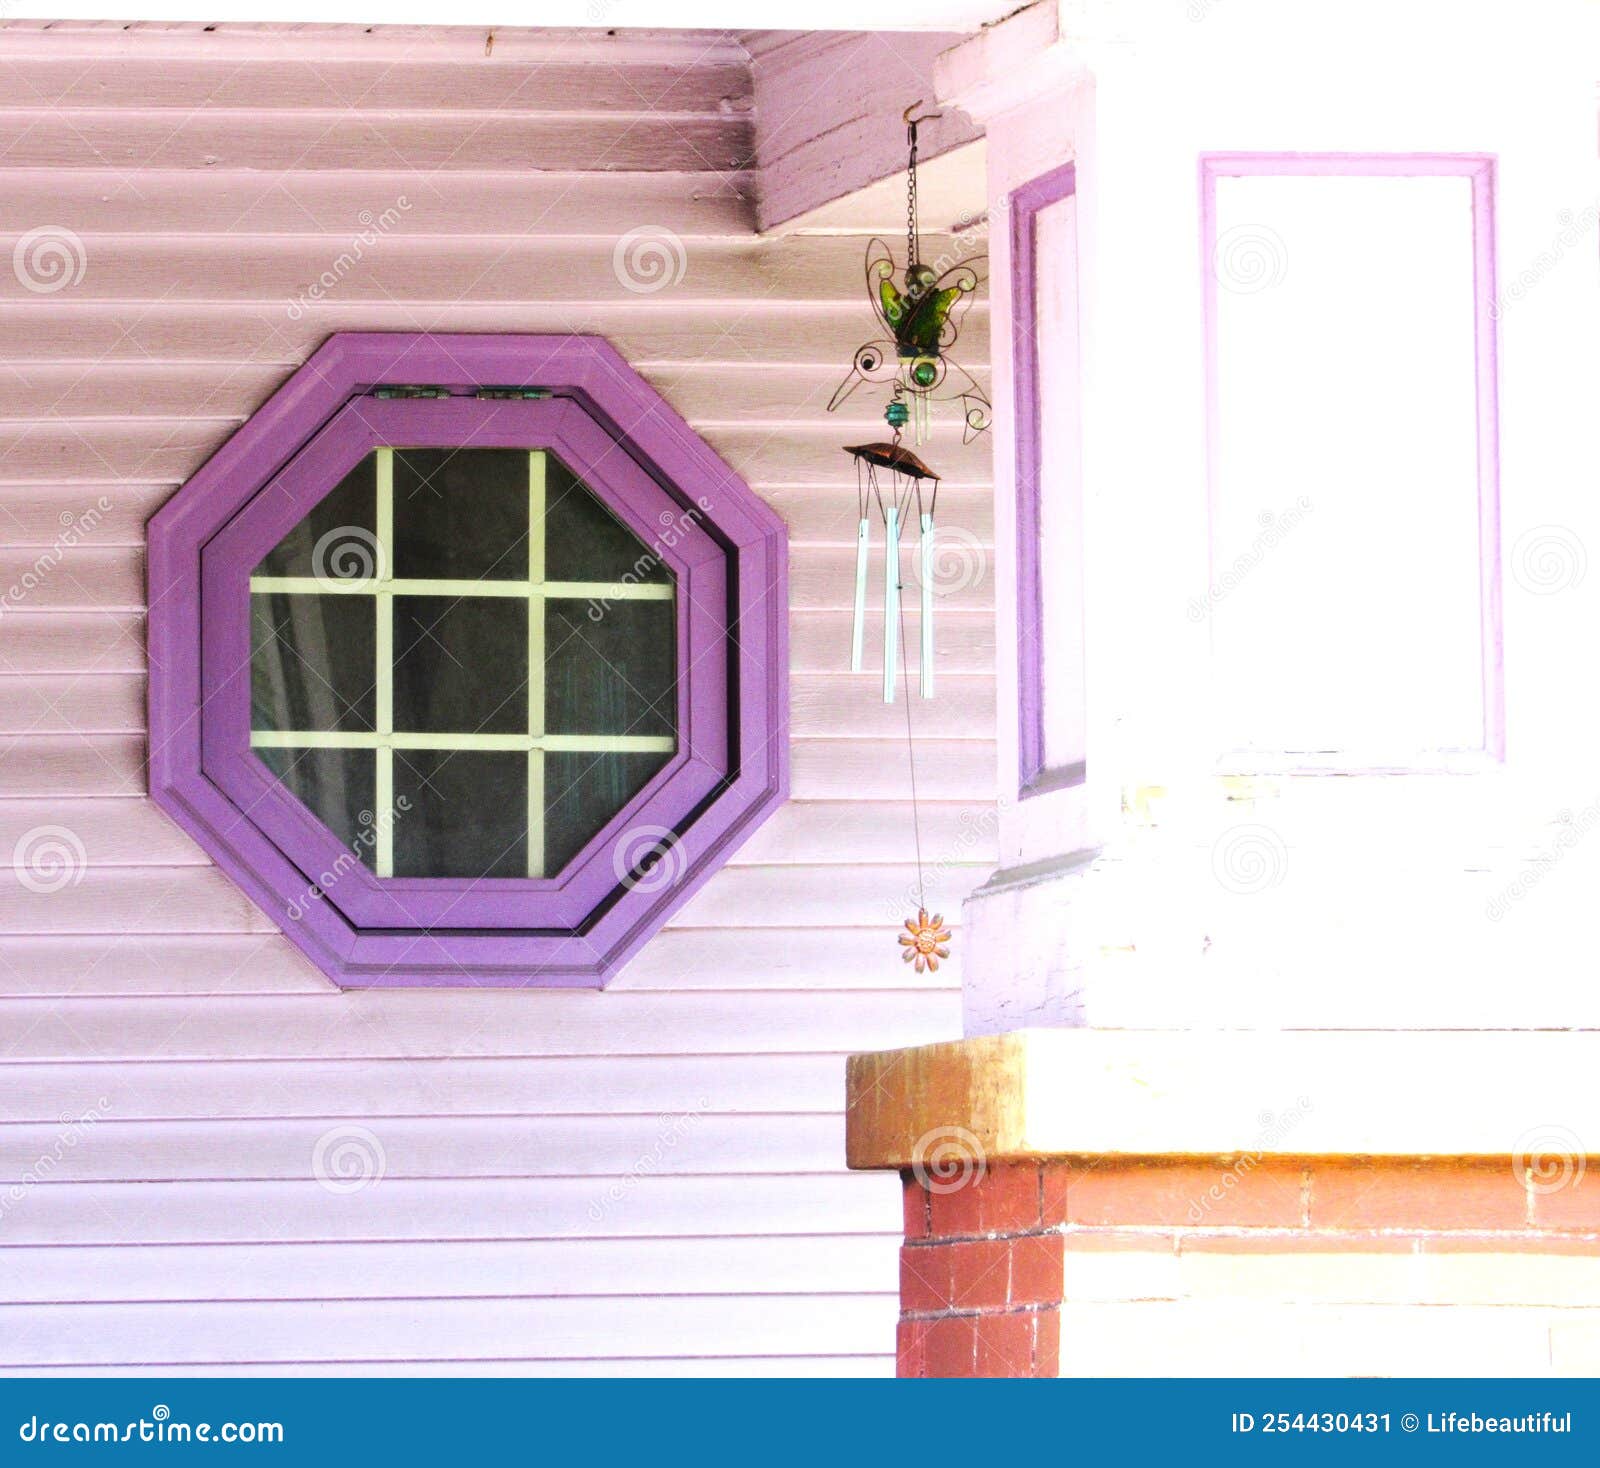 135平三居室演绎复古紫色迷情，当摩登紫遇上复古绿_太平洋家居网整屋案例